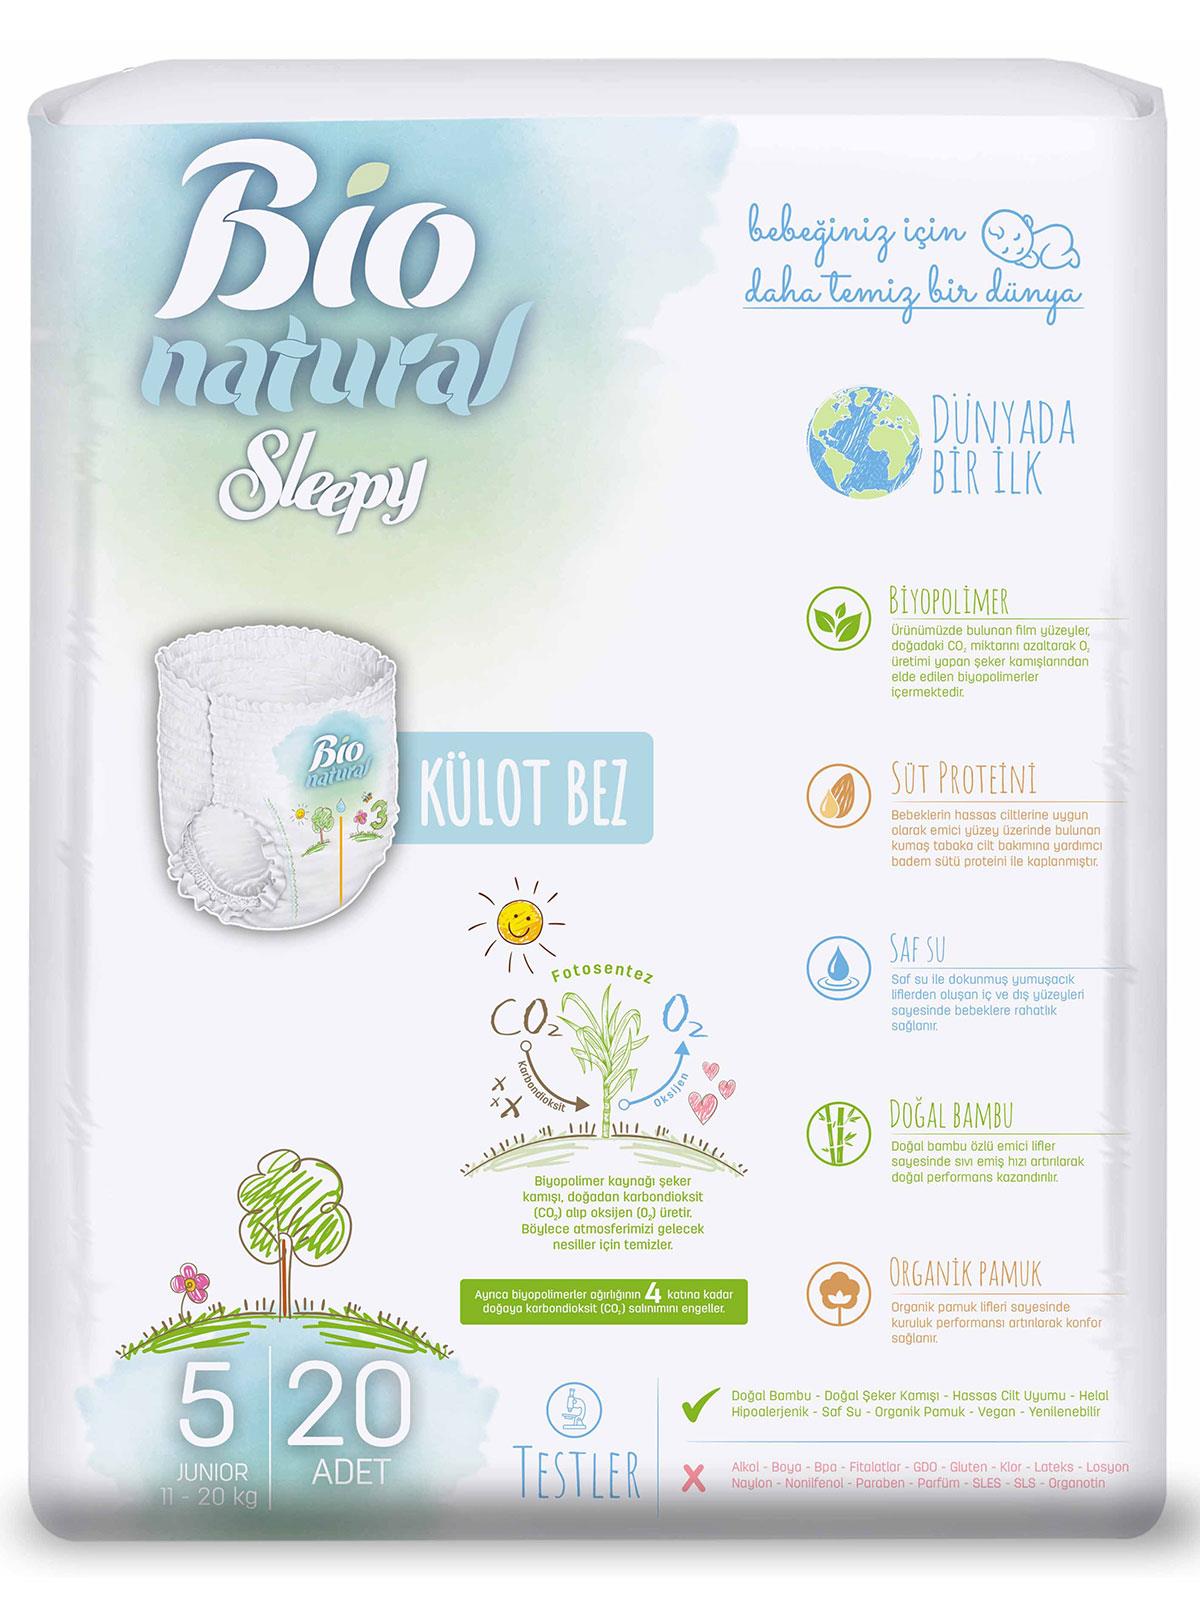 Sleepy Bio Natural Külot Bez 5 Numara Junior 11-20 kg 20 Adet